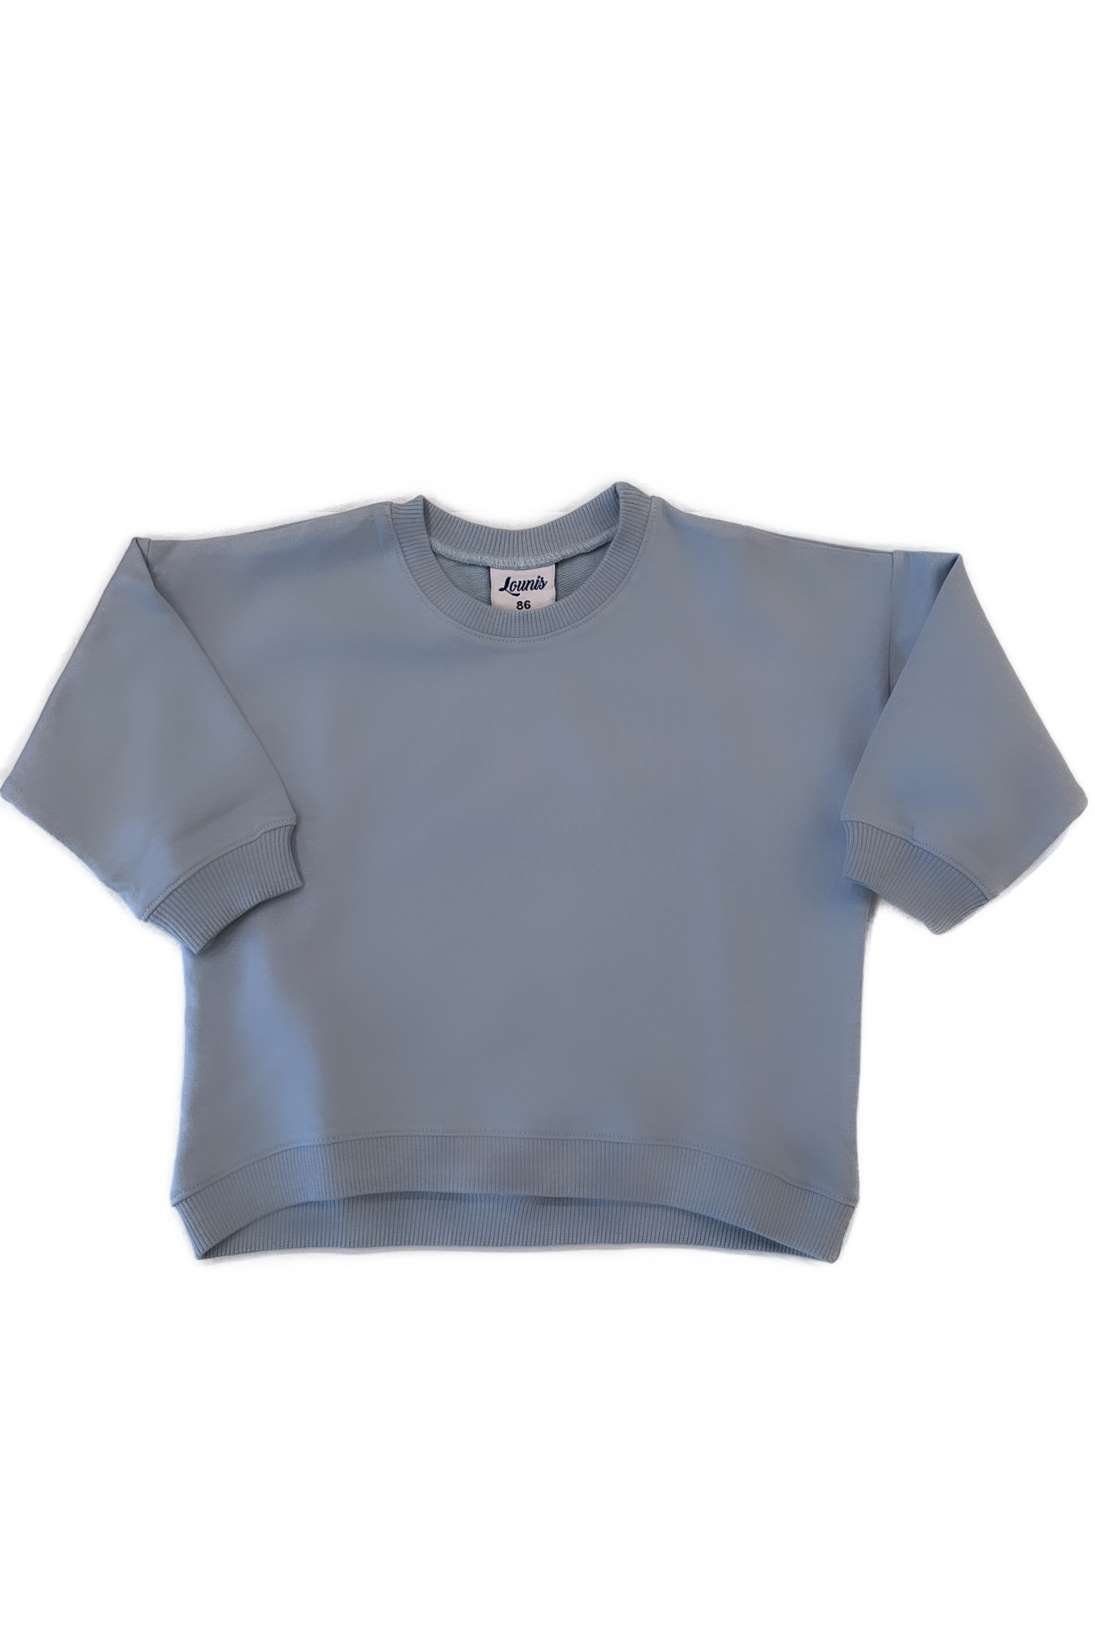 Lounis Sweatshirt Pullover - Babys und Kleinkinder - Kindershirt Baumwolle Hellblau